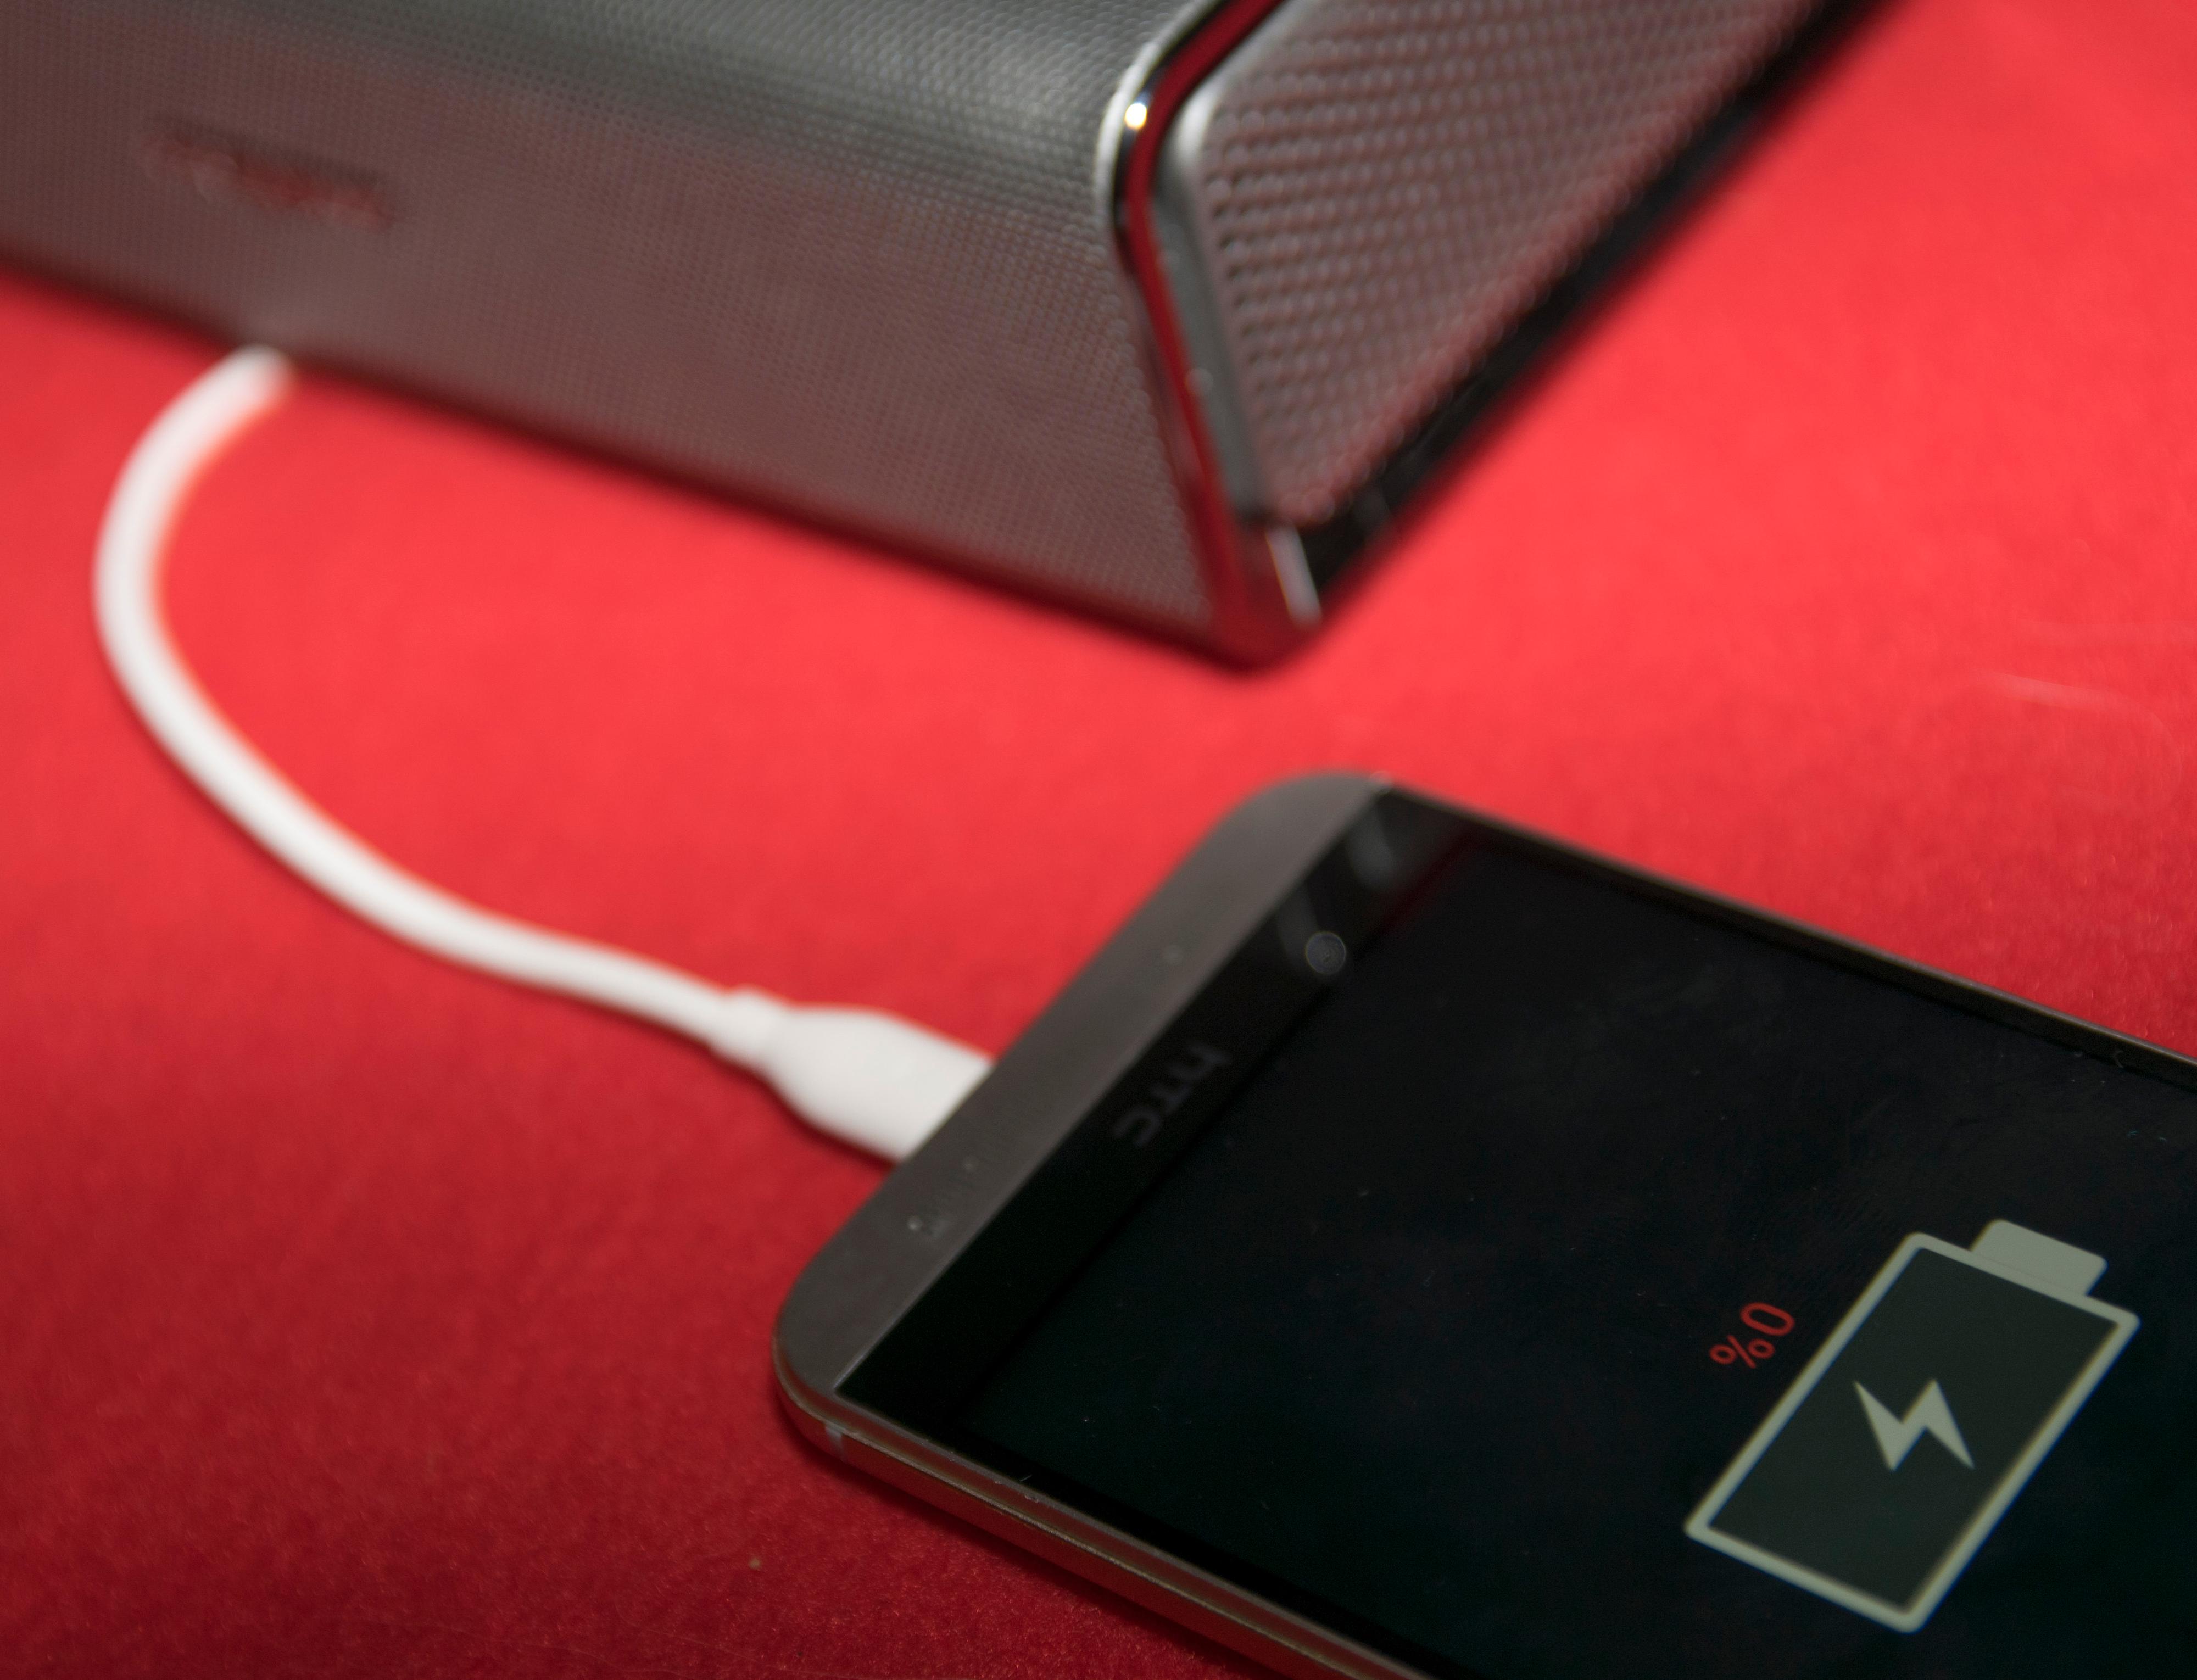 Du kan bruke Sound Blaster Roar til å lade mobilen din om den er tom for strøm. Batteriet er på 6000 mAh, noe som burde gi både en full mobillading og mange timer musikk ved siden av. Foto: Finn Jarle Kvalheim, Tek.no